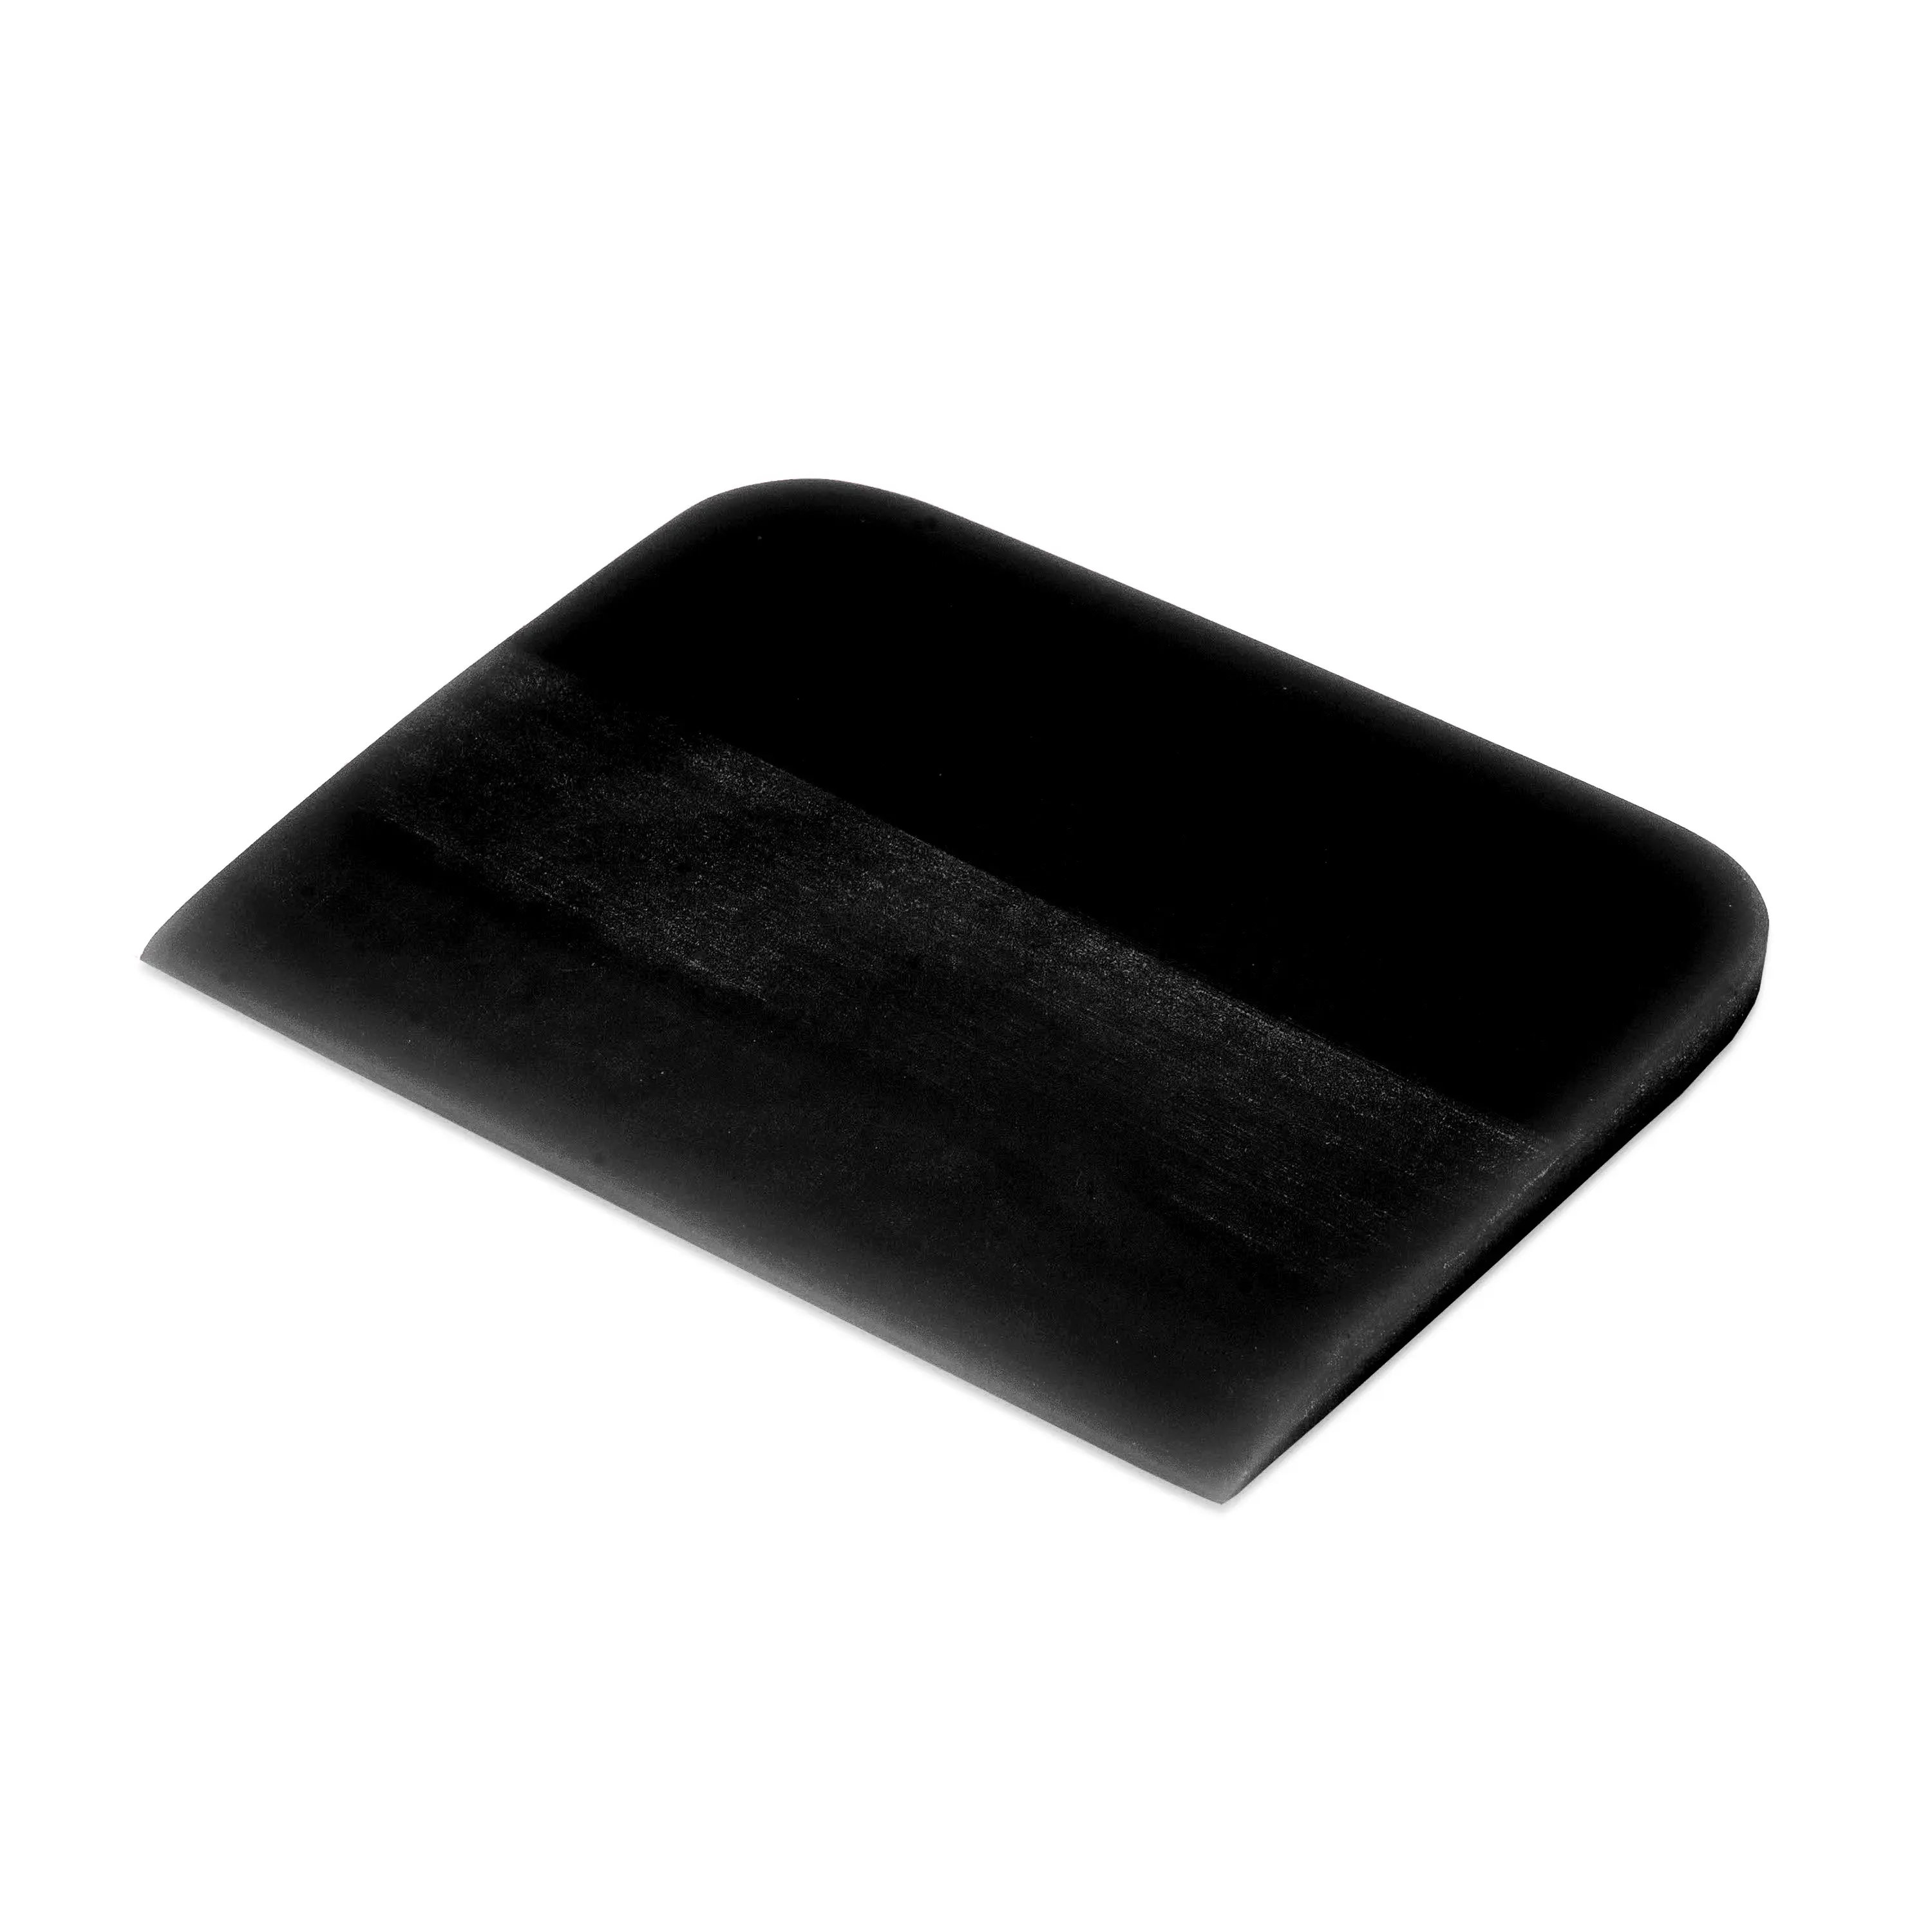 Polyurethane black film squeeging tool Grim Slider, 0.6x10x7.5 cm